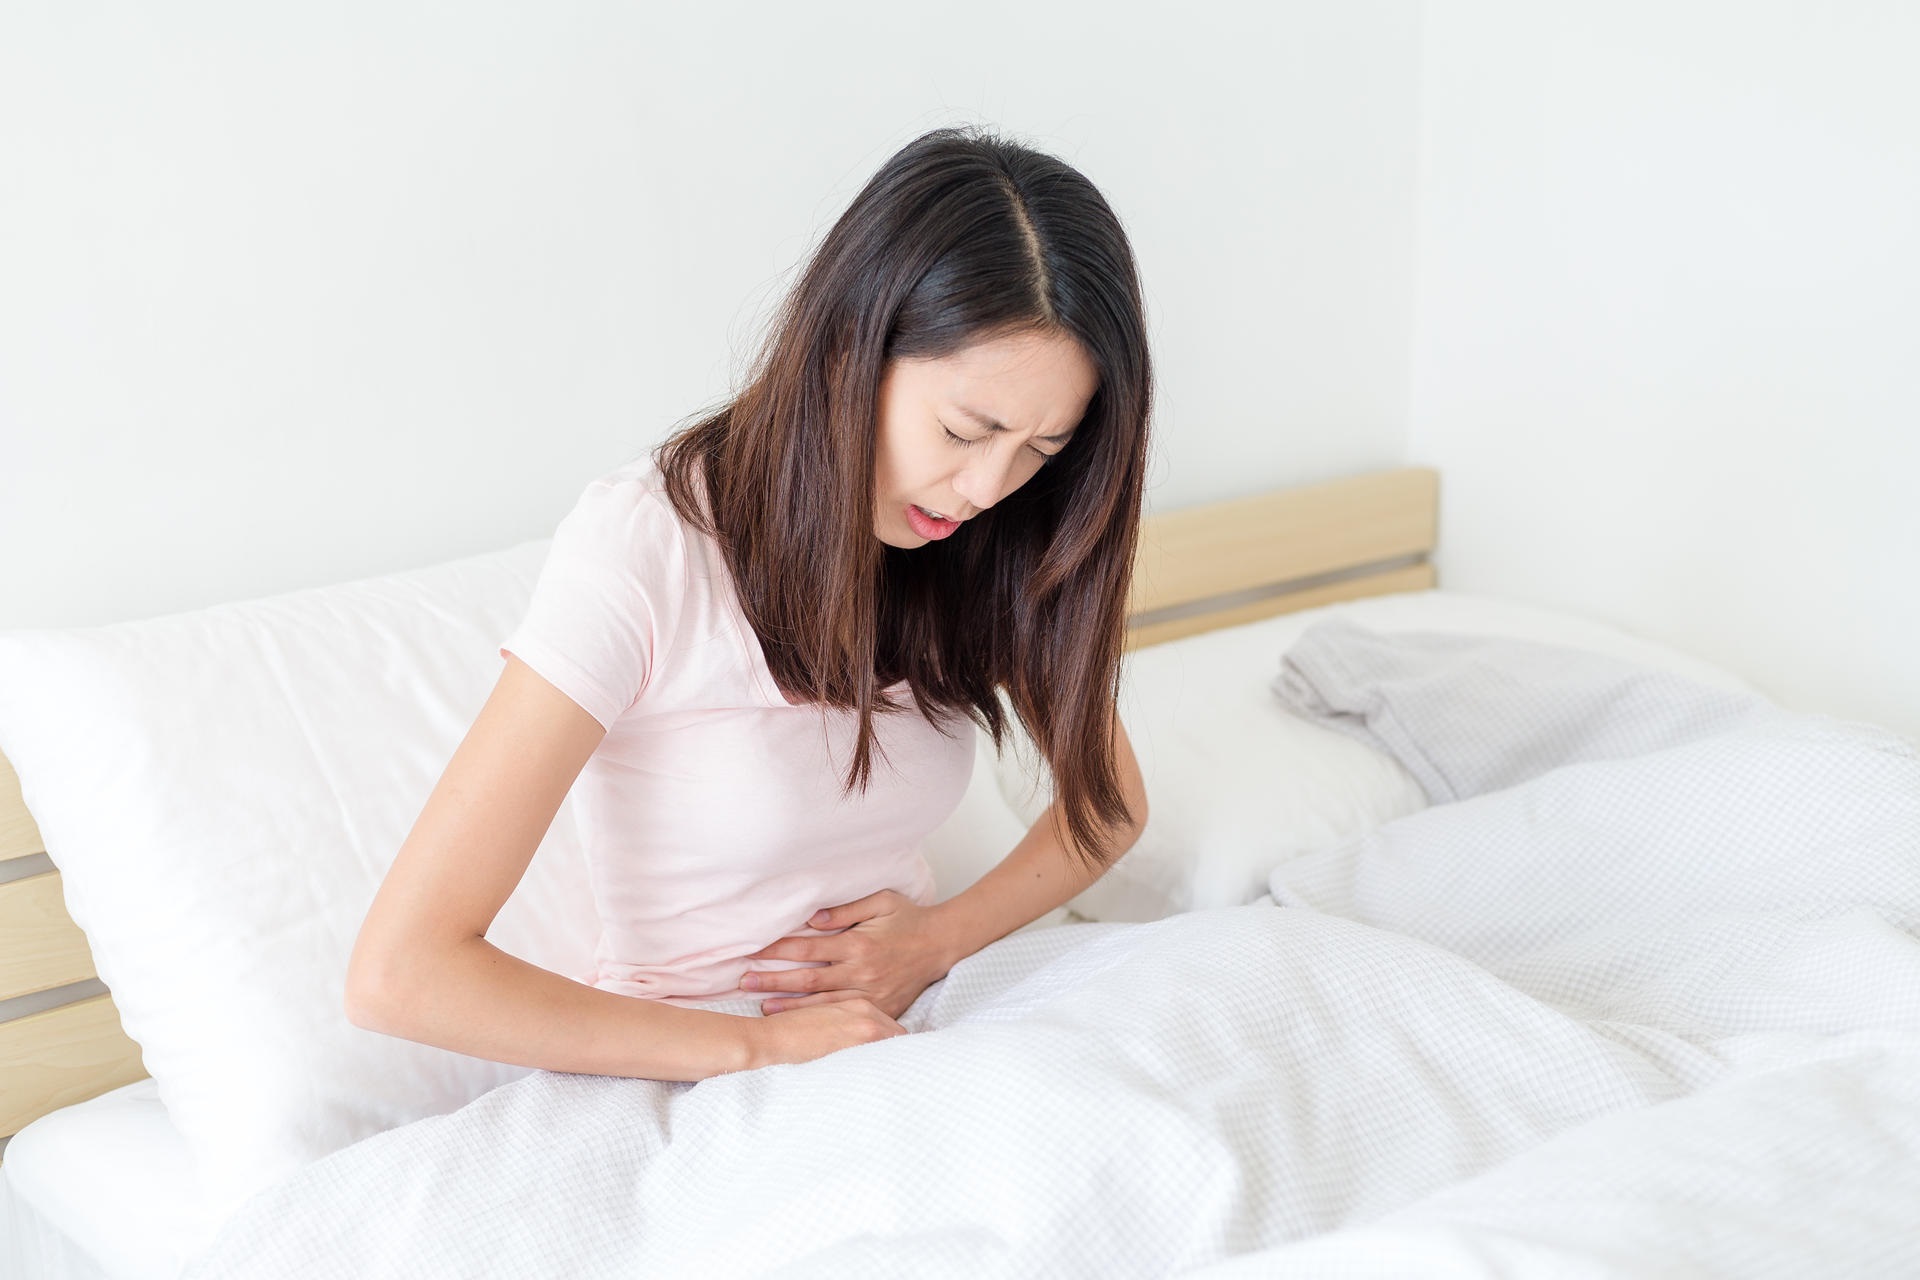 Rong kinh có thể do đơn thuần là triệu chứng của rối loạn kinh nguyệt, nhưng cũng có thể là  biểu hiện của các bệnh lý nguy hiểm ở tử cung và buồng trứng